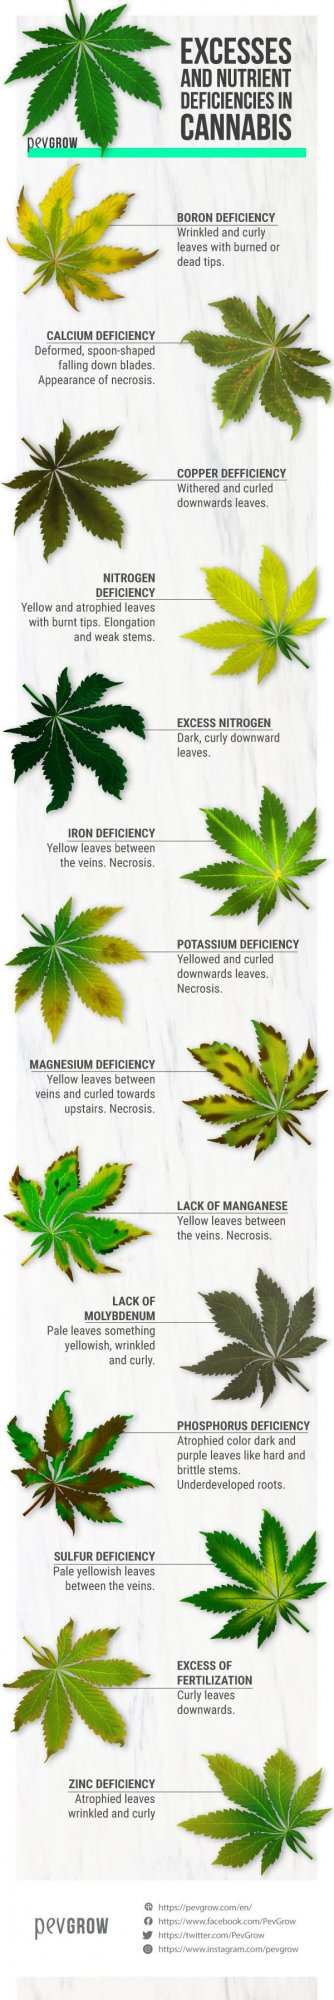 Excesses nutrient deficiencies cannabis